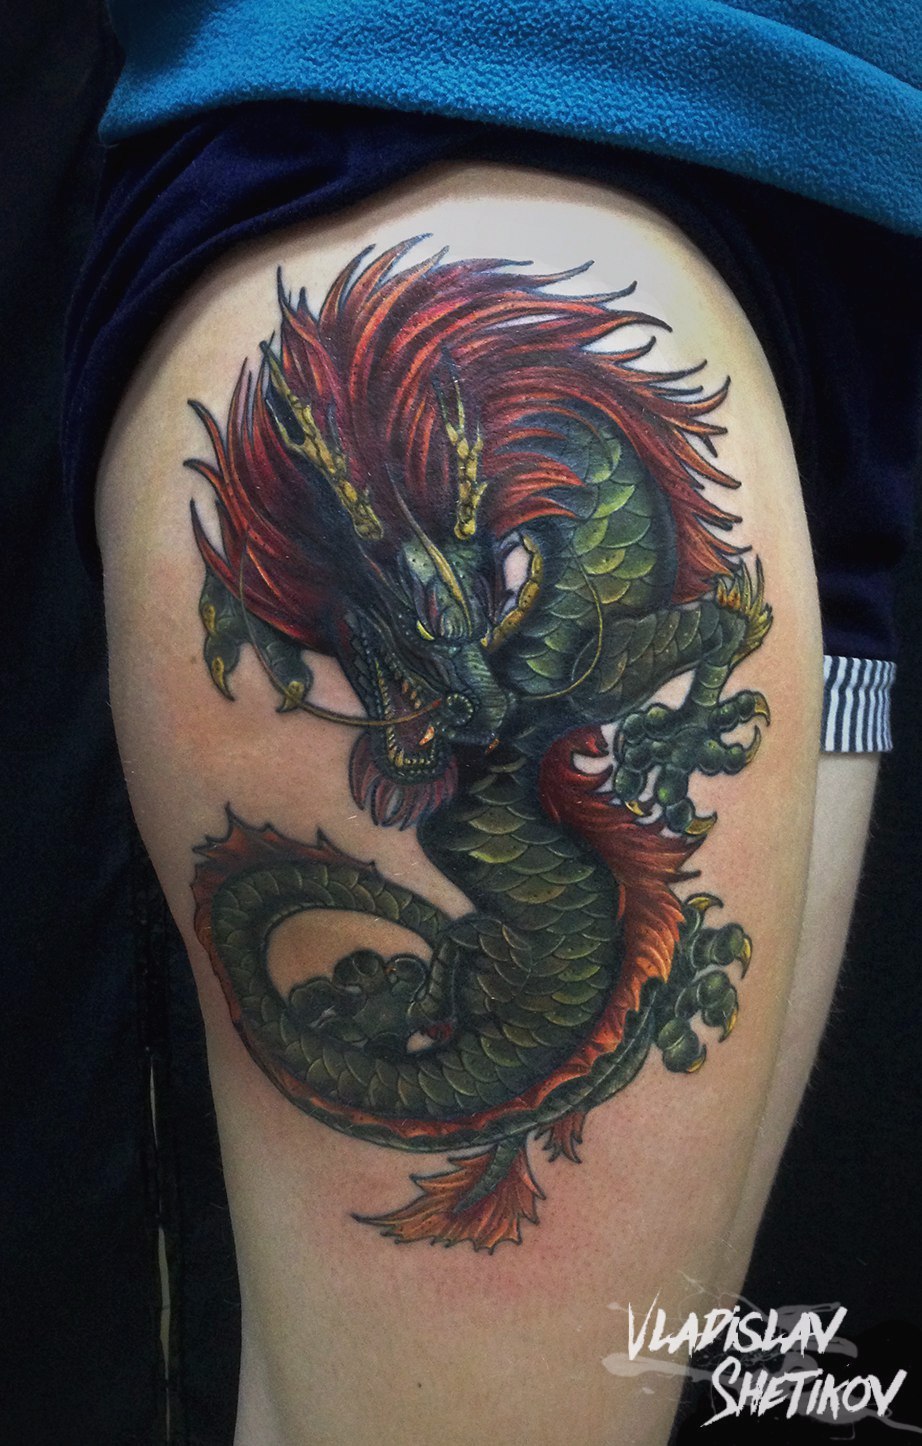 Gran tatuaje de dragón chino en el hombro